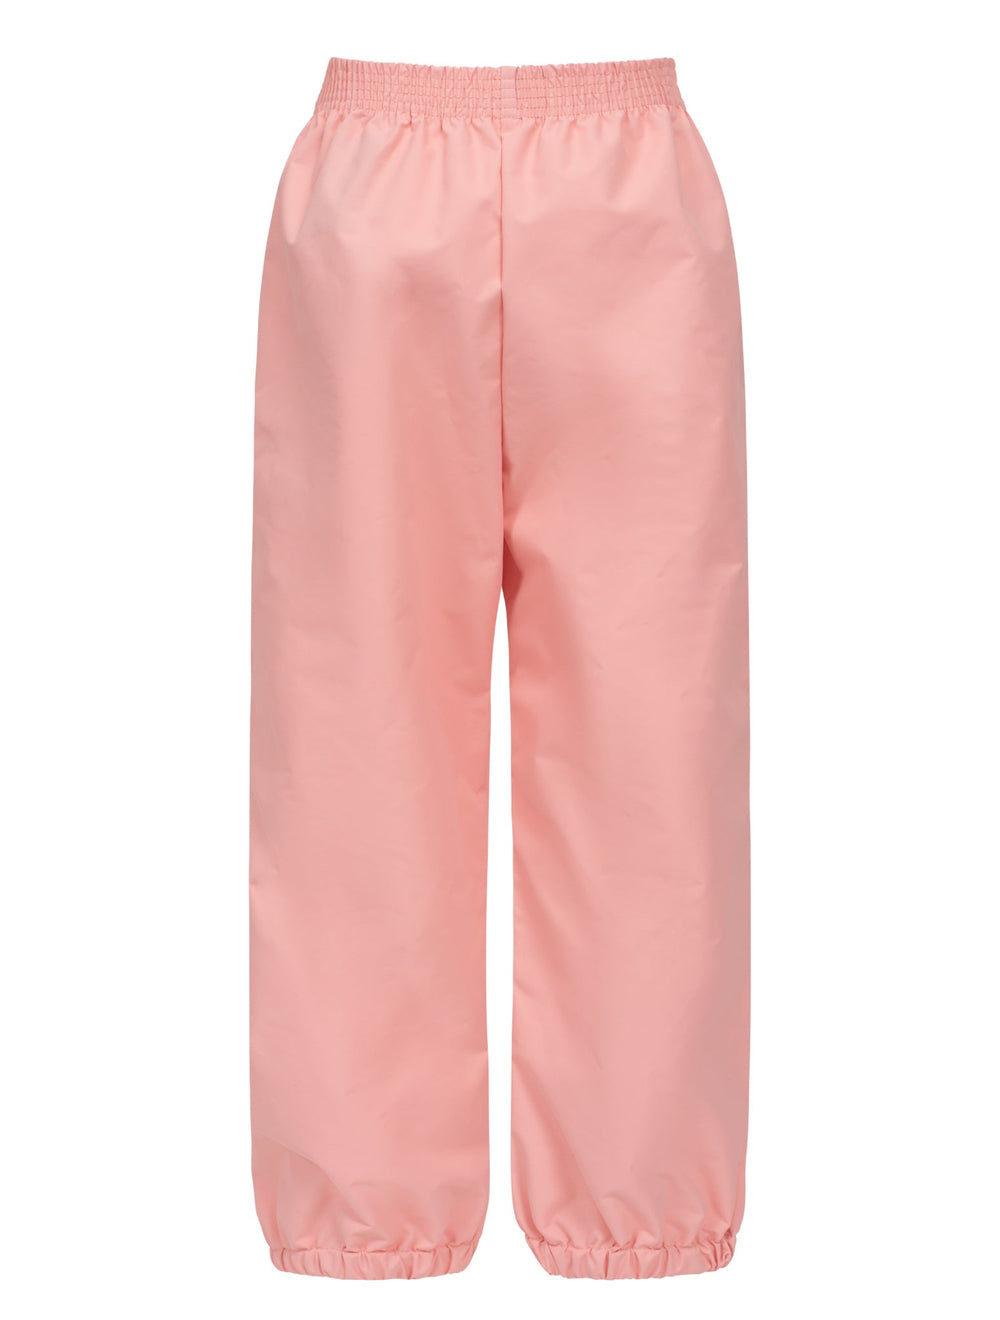 Splash Pant - Apricot Blush | Waterproof Windproof Eco